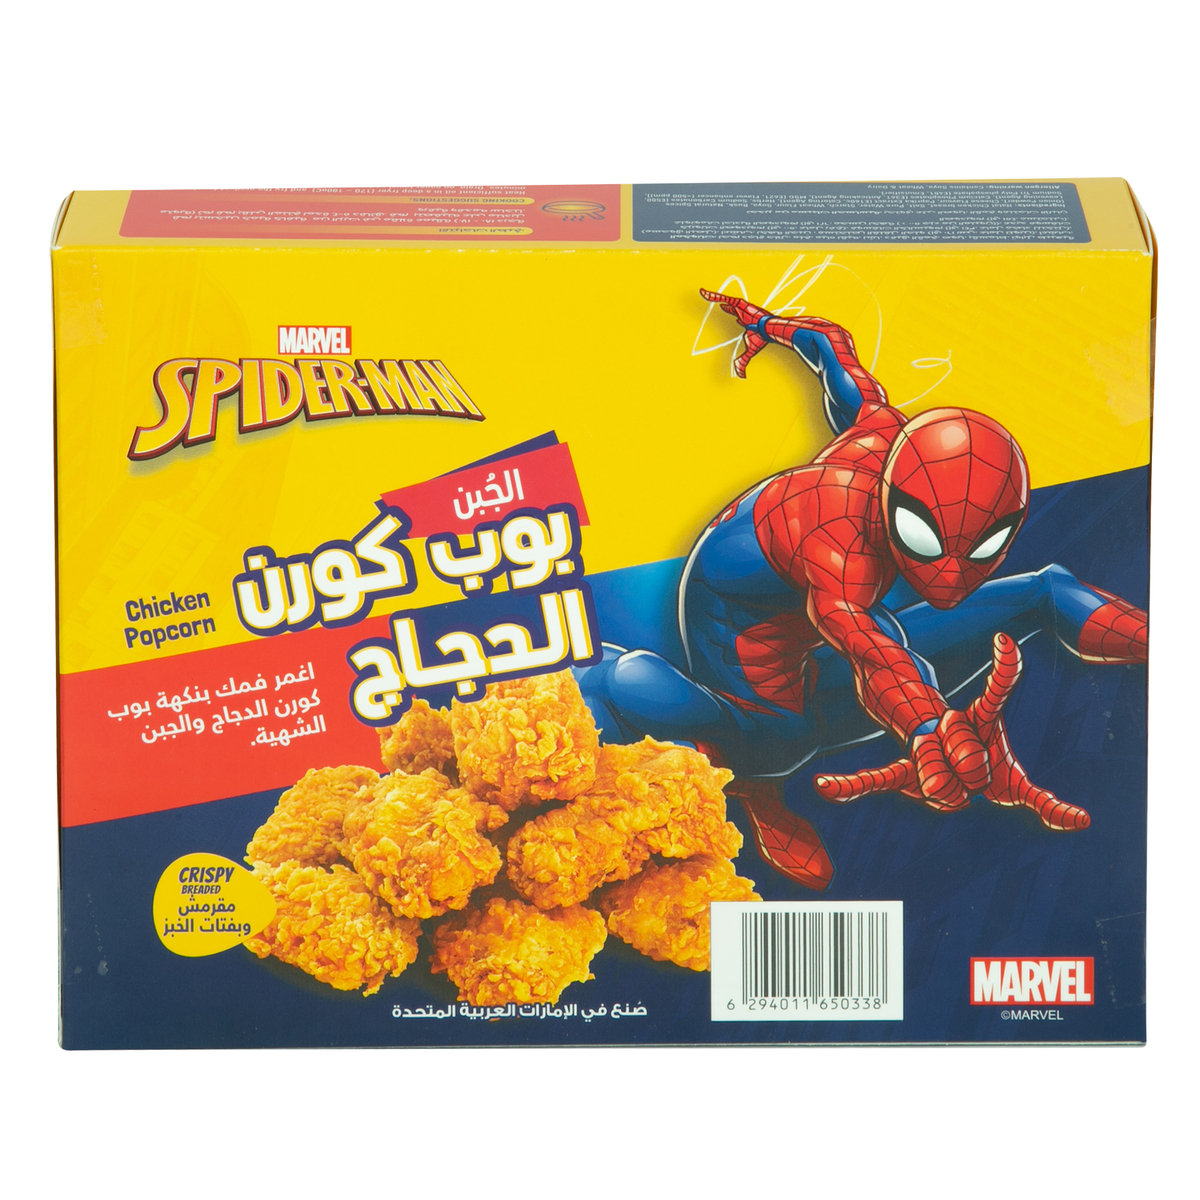 Spiderman Cheese Chicken Popcorn 400g